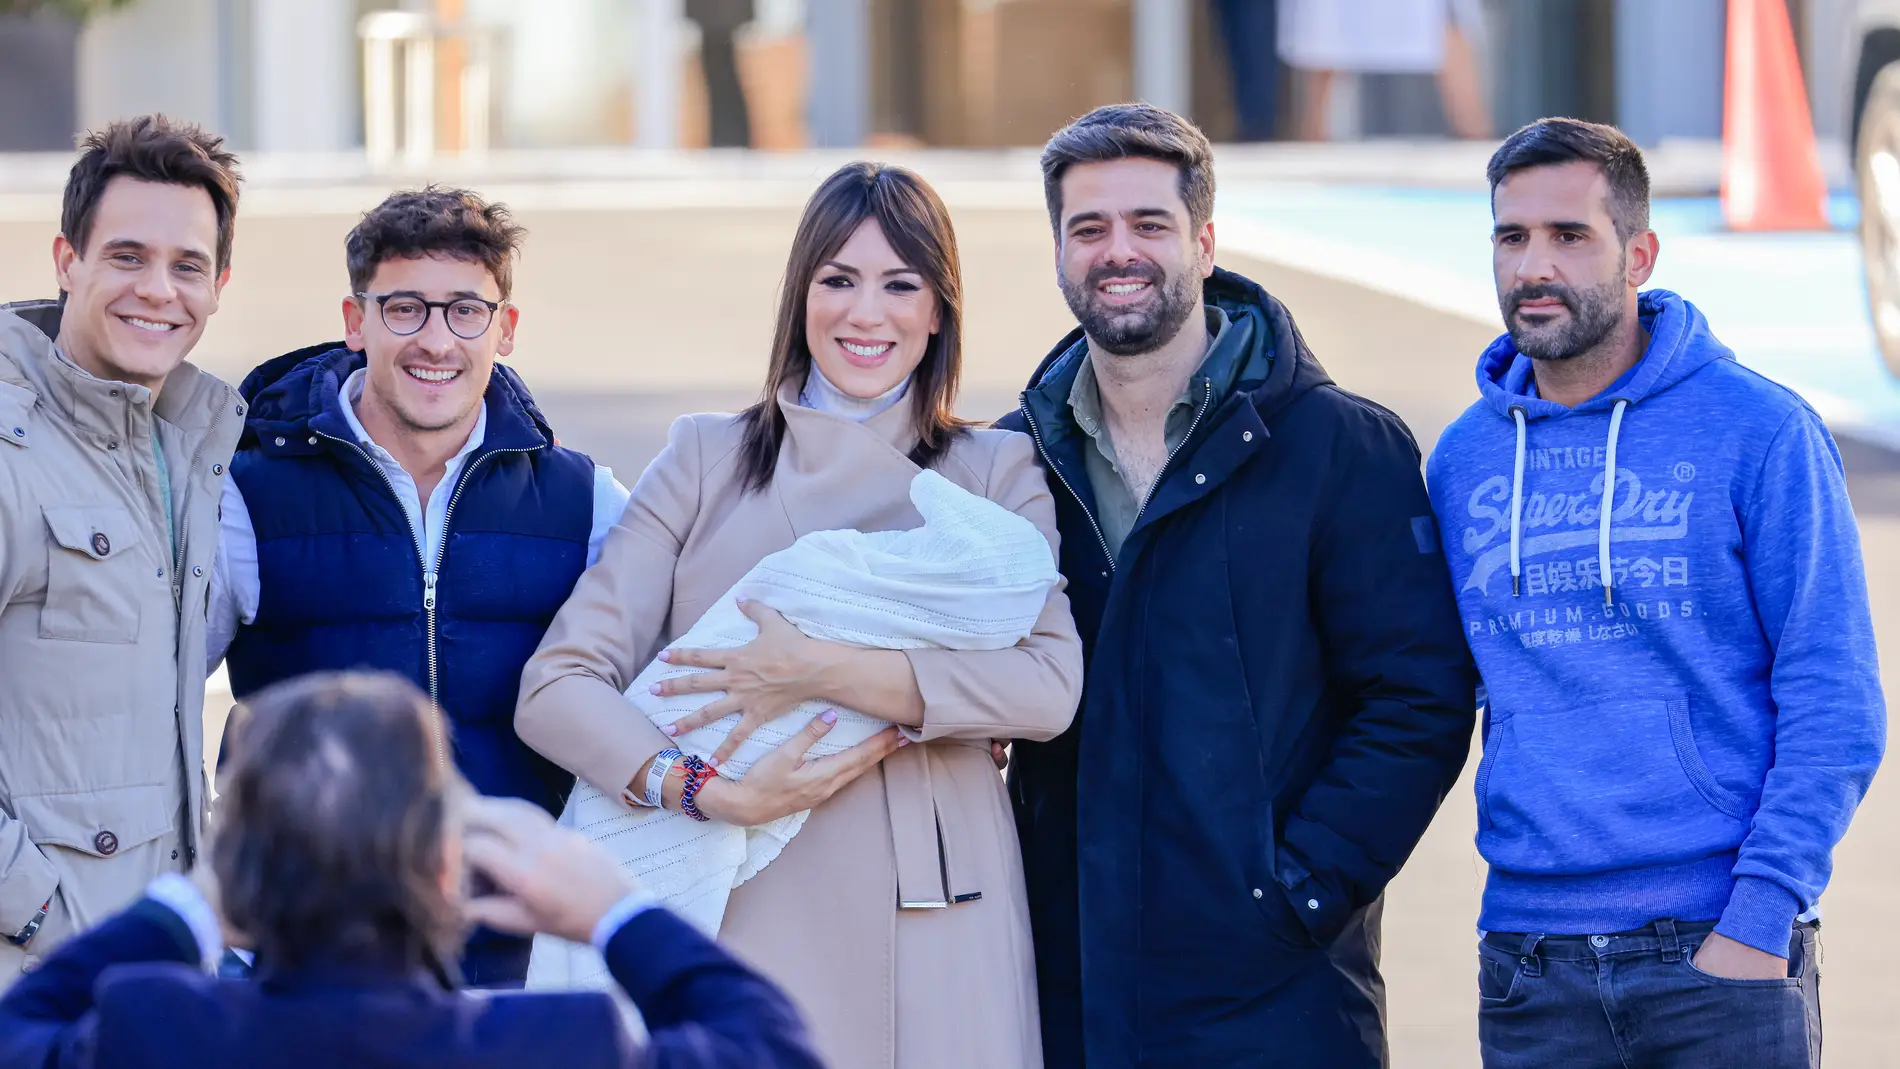 Patricia Pardo y Christian Gálvez posan a la salida del hospital tras dar la bienvenida a su primer hijo en común.